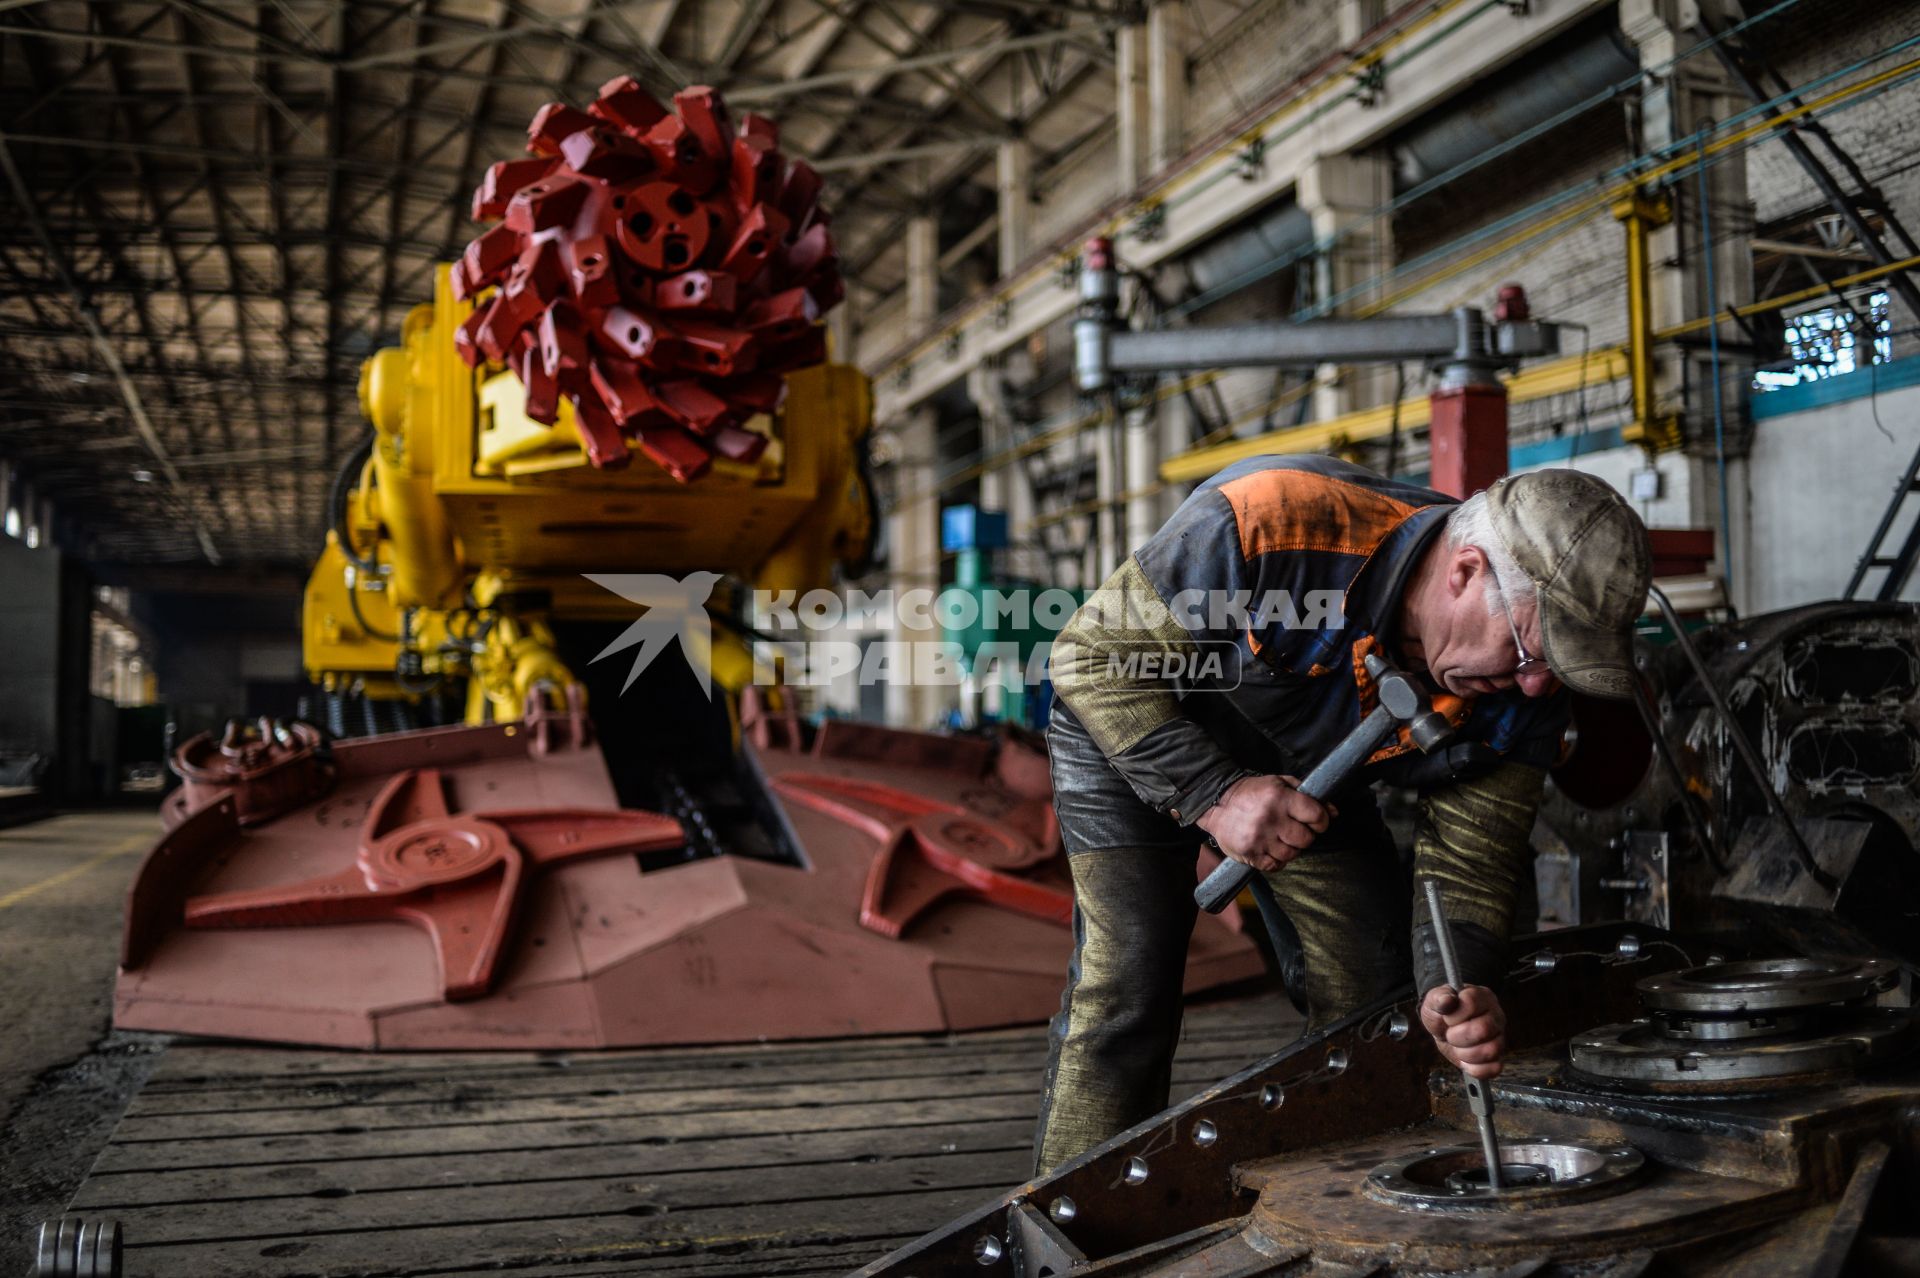 Украина, Донецкая область, Ясиноватое. Рабочий в производственном цехе Машиностроительного завода.